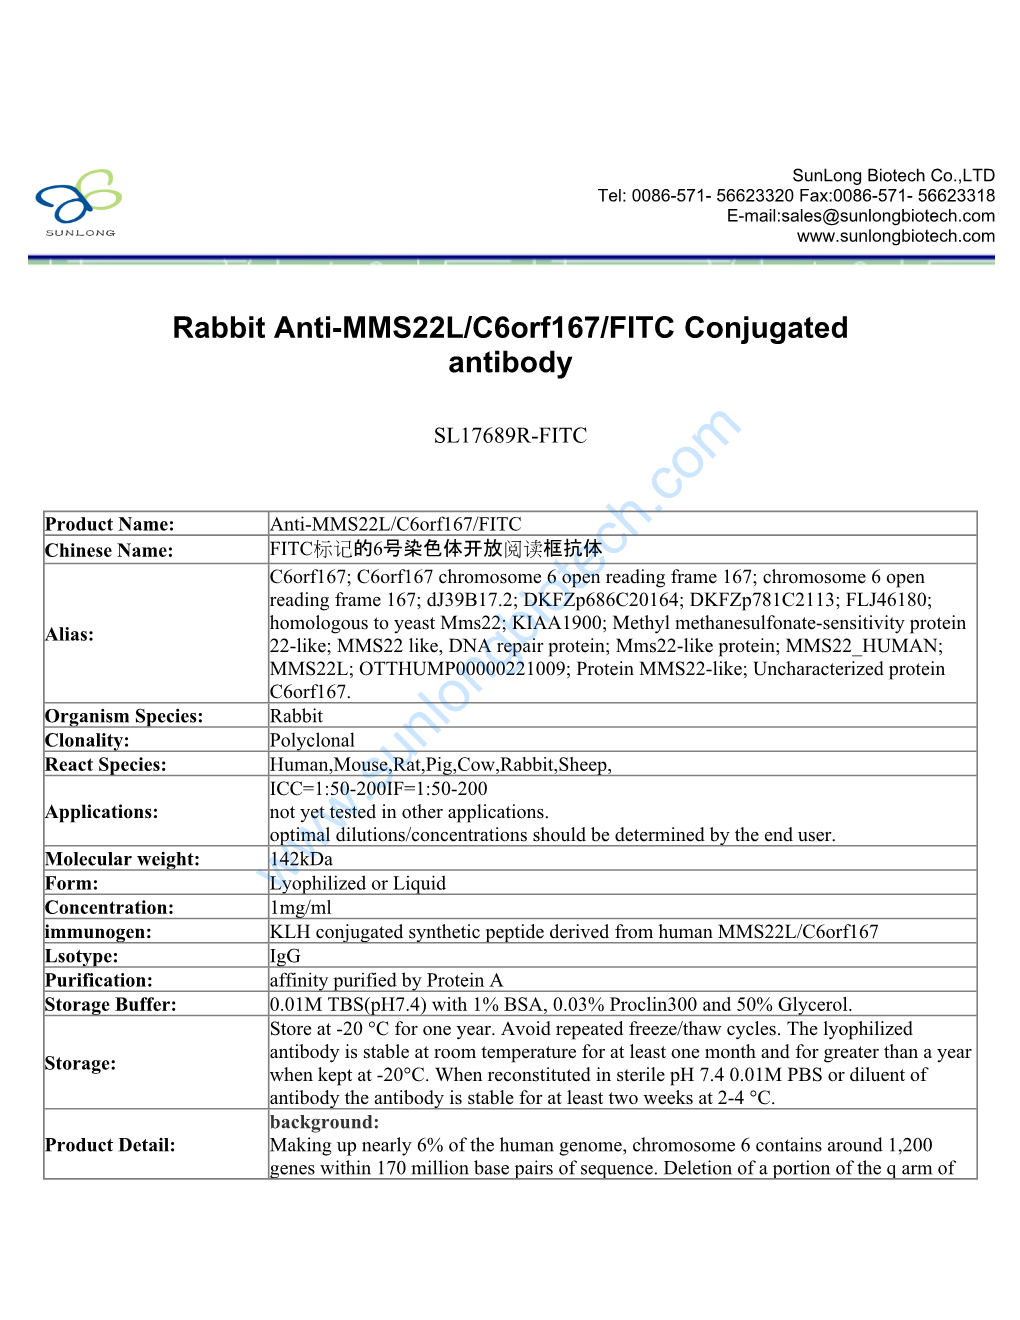 Rabbit Anti-MMS22L/C6orf167/FITC Conjugated Antibody-SL17689R